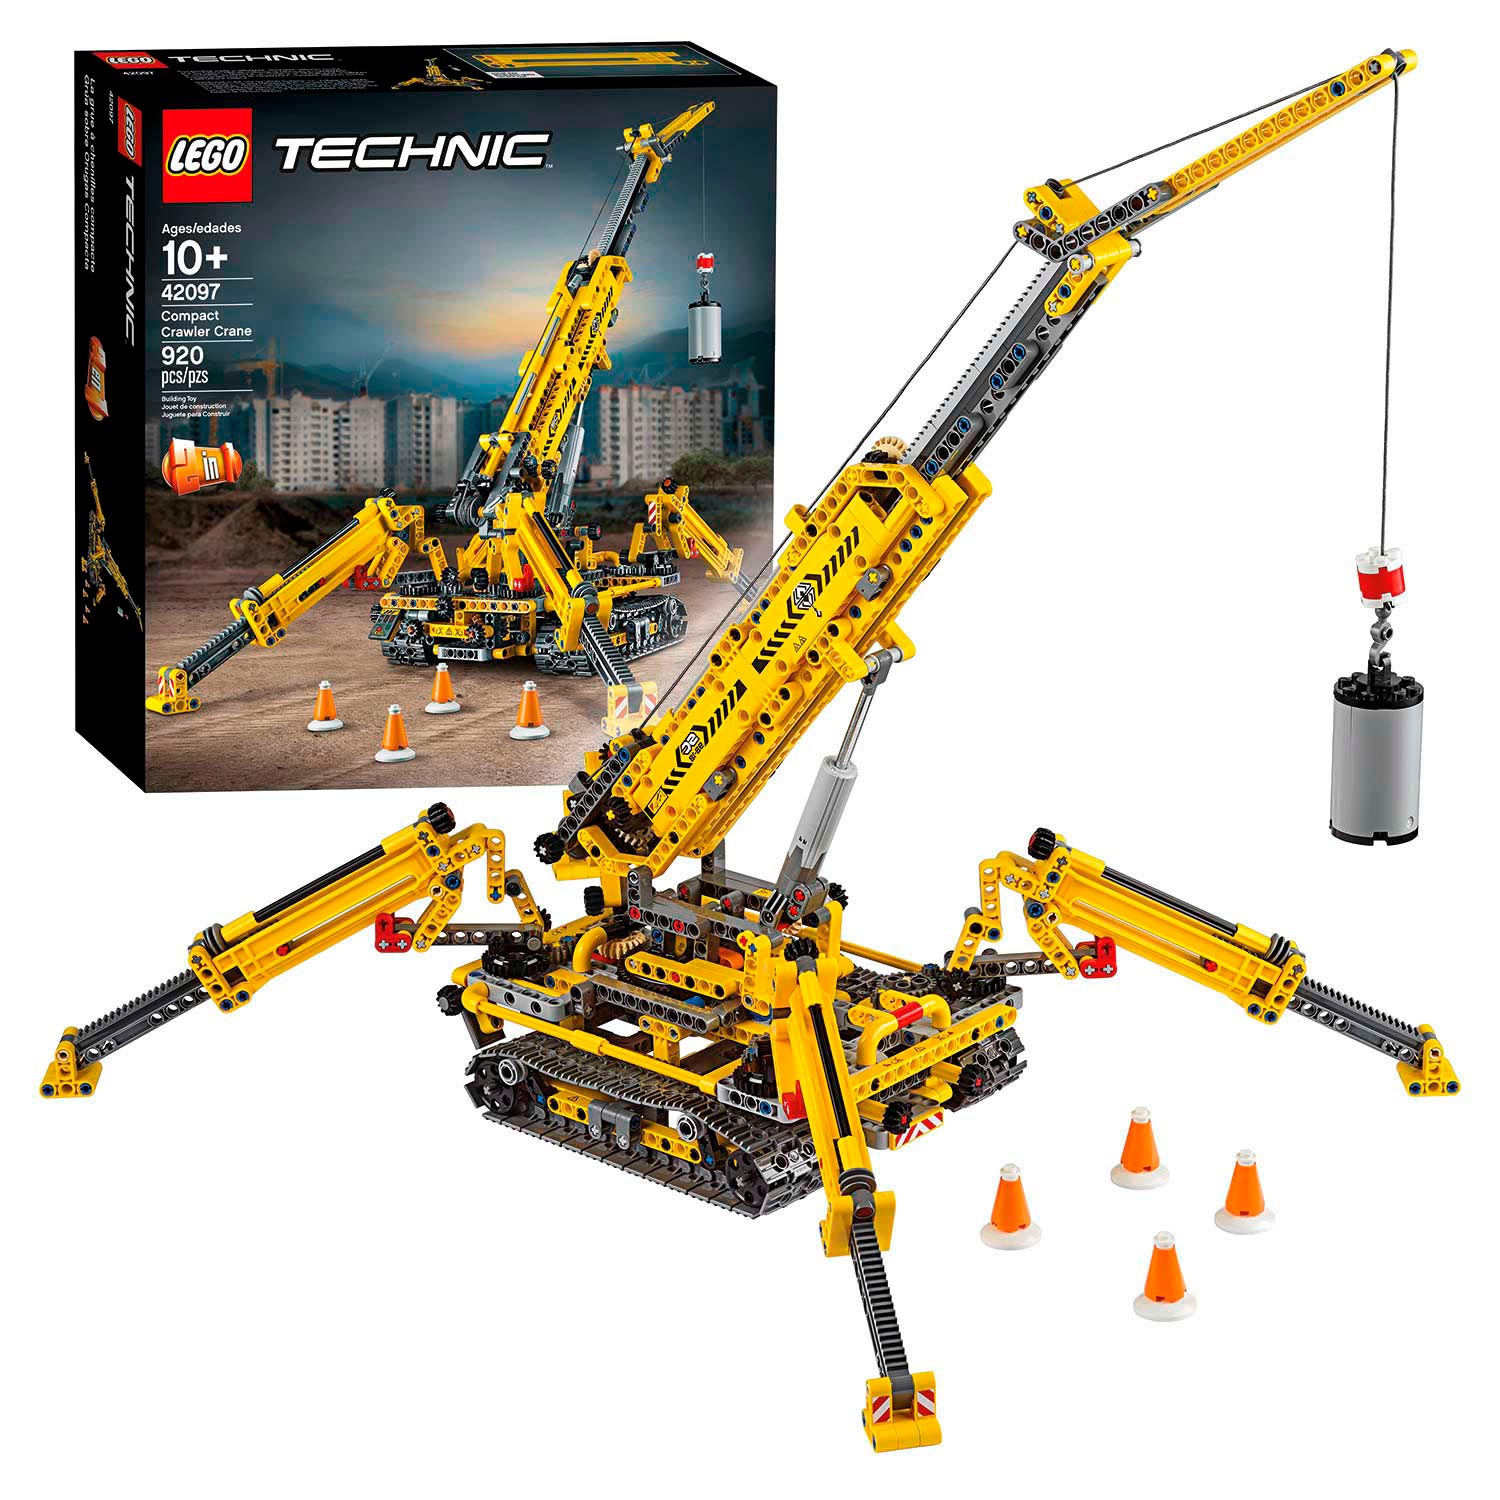 Lego Technic 42097 Compacte Rupsband Kraan